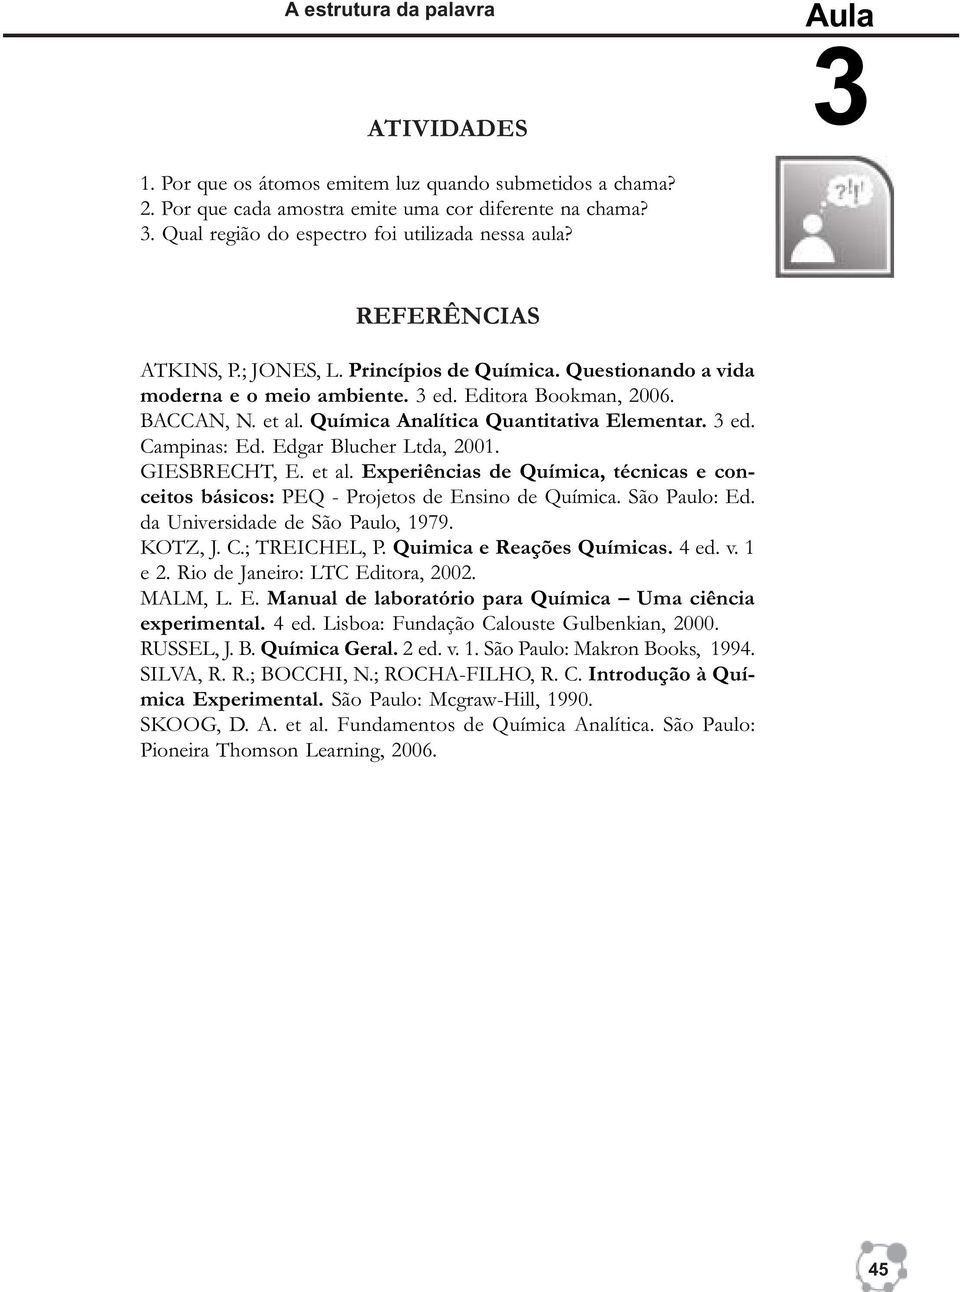 Edgar Blucher Ltda, 2001. GIESBRECHT, E. et al. Experiências de Química, técnicas e conceitos básicos: PEQ - Projetos de Ensino de Química. São Paulo: Ed. da Universidade de São Paulo, 1979. KOTZ, J.